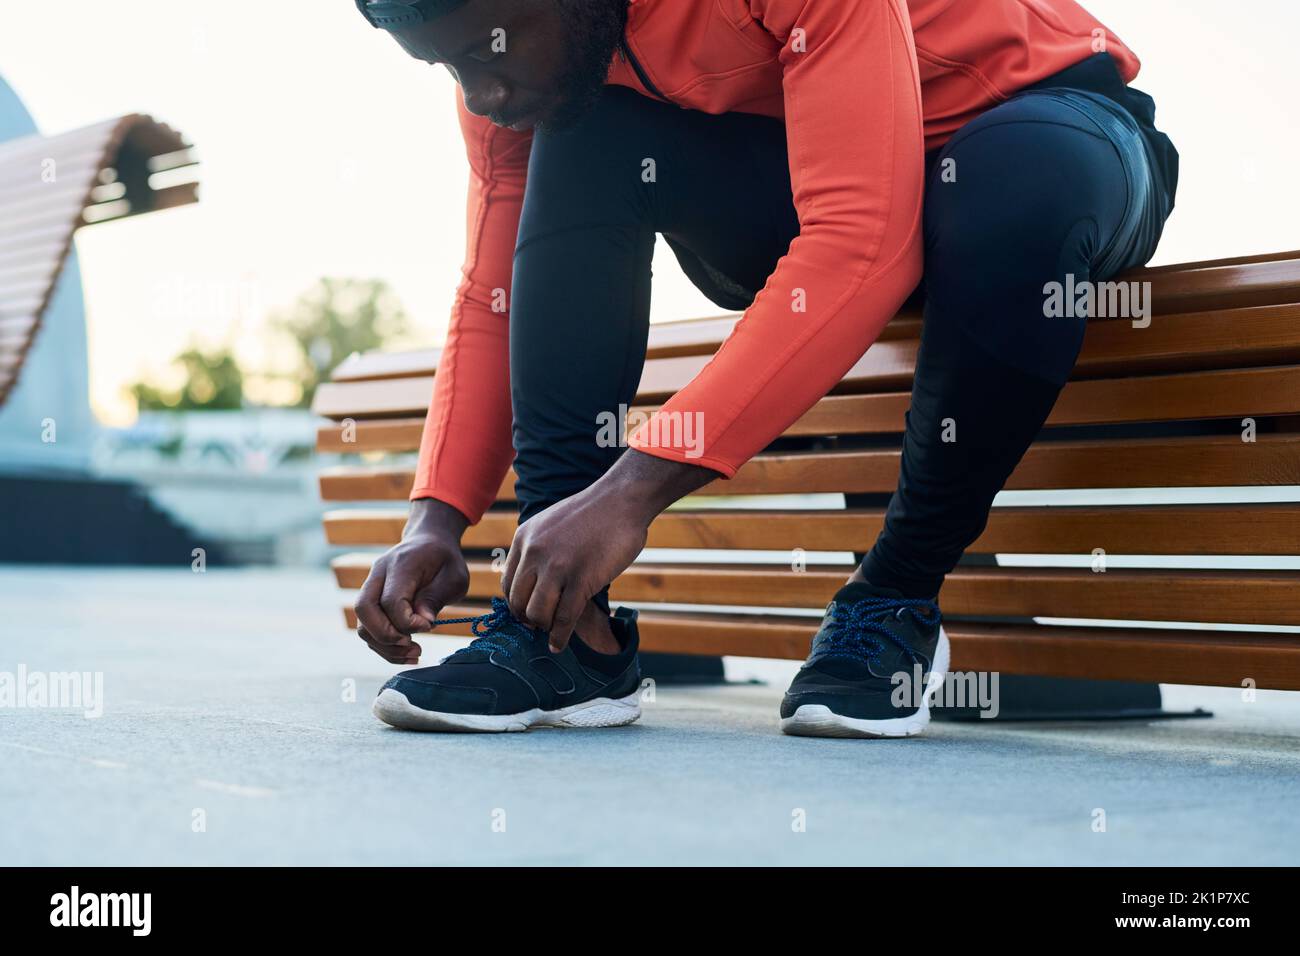 Atleta joven o corredor con chaqueta deportiva roja y leggins negras atando el zapato de las sneakers mientras se sienta en un banco de madera Foto de stock